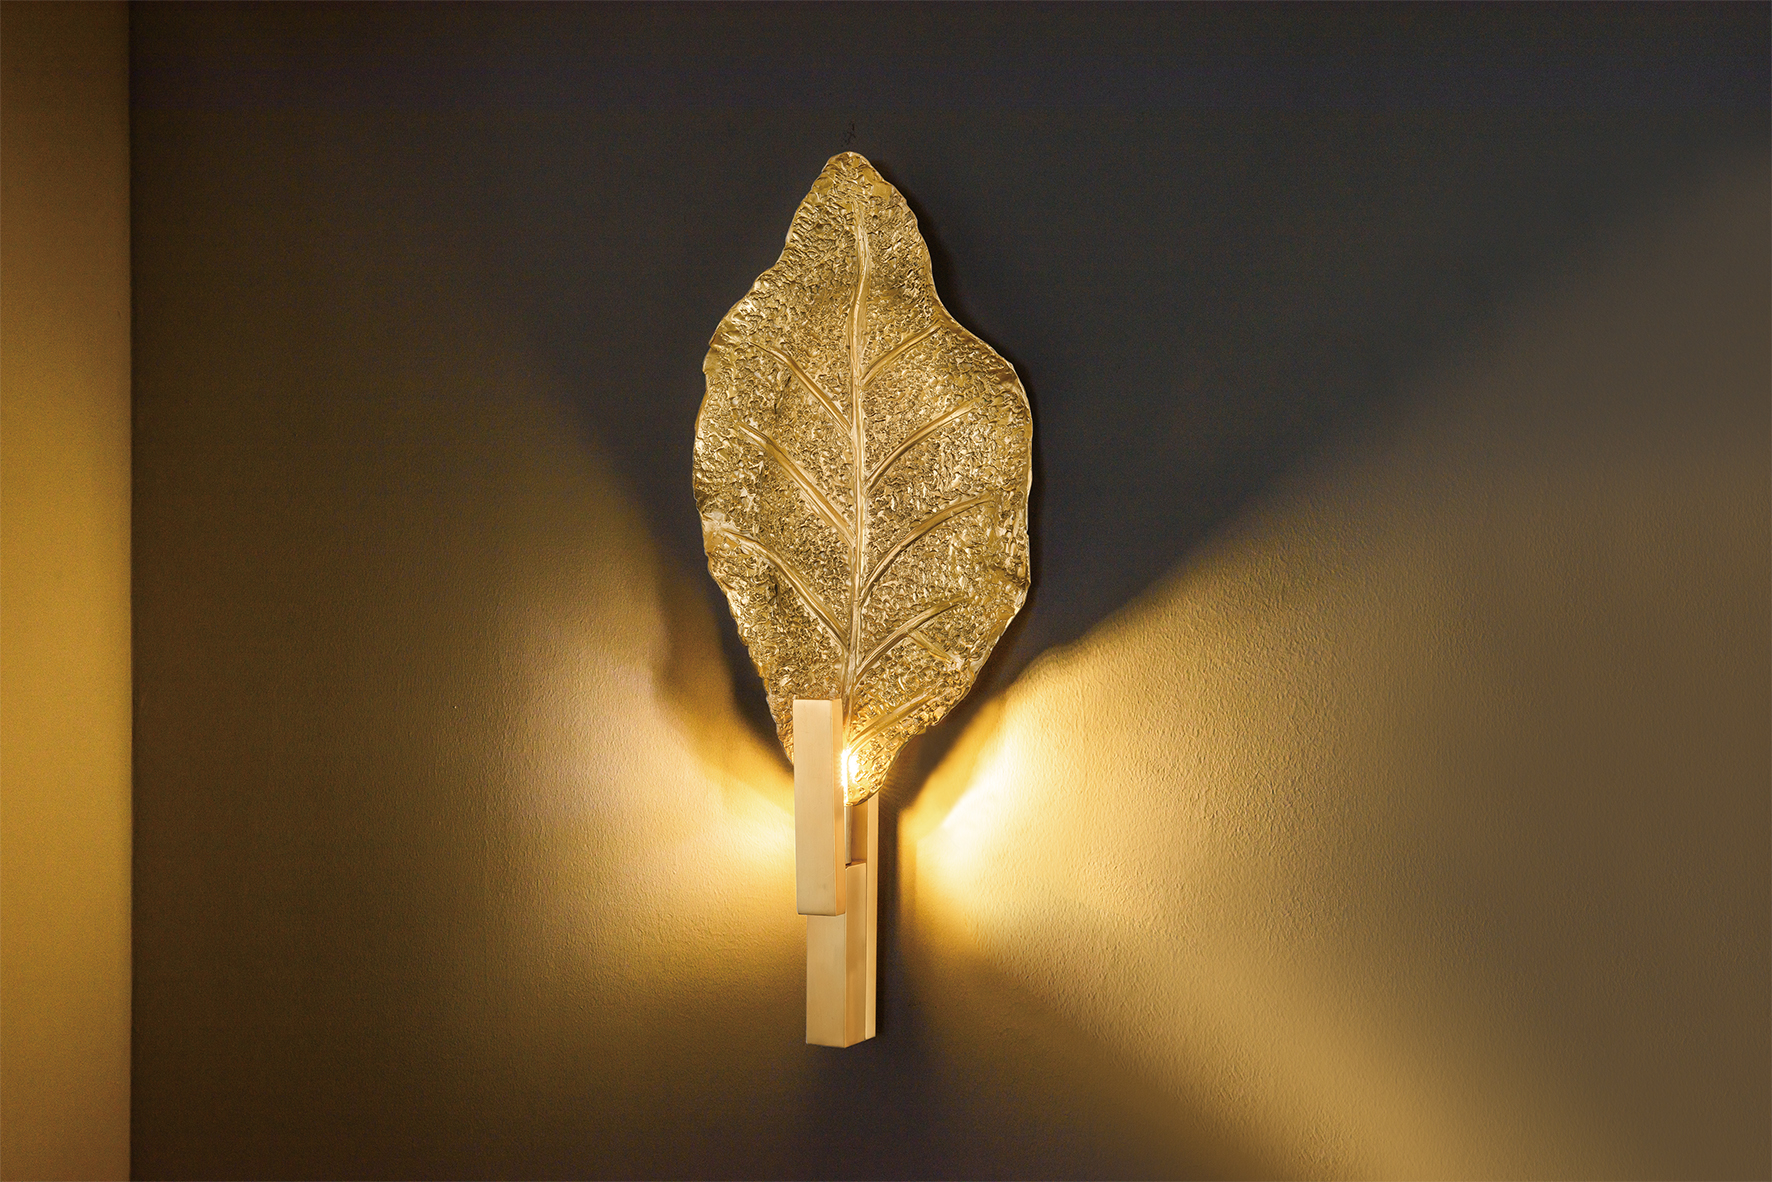 مصباح حائط ديكور منزلي على شكل ورقة نحاسية (KAW18-089)